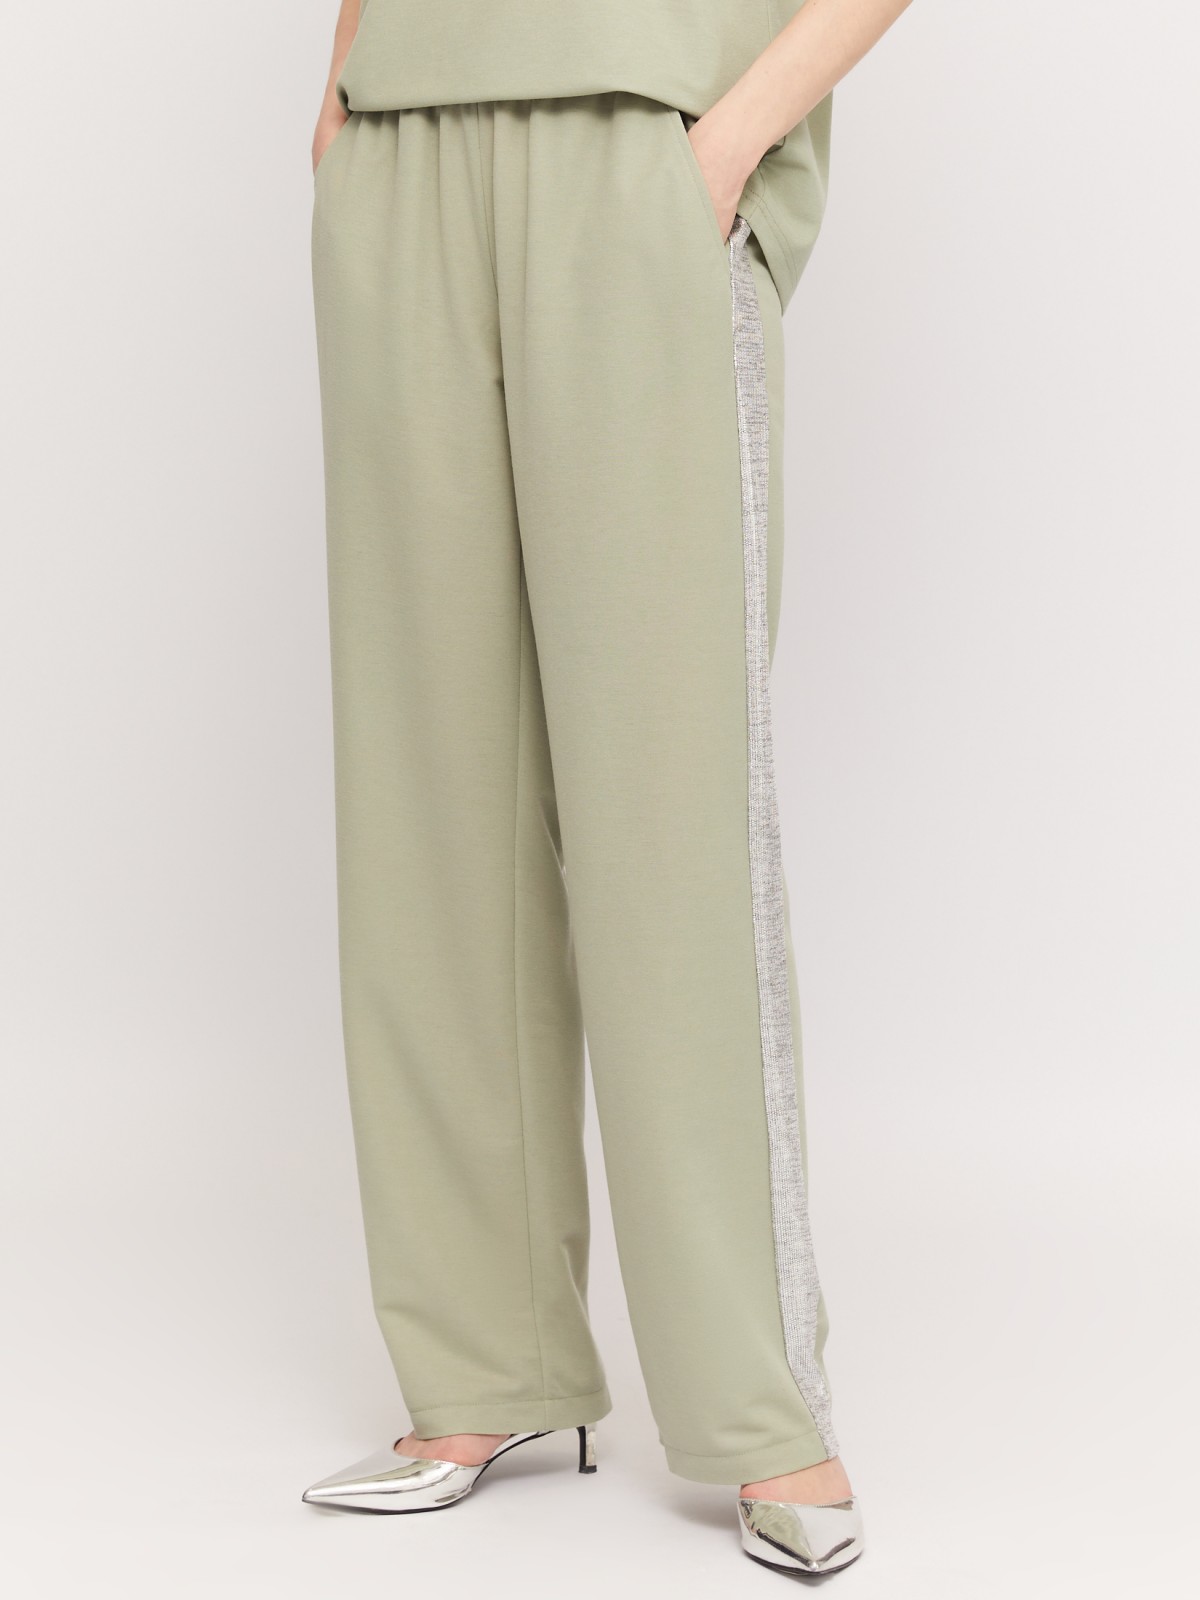 Трикотажные брюки-джоггеры с лампасами zolla 02424739Y023, цвет светло-зеленый, размер M - фото 2